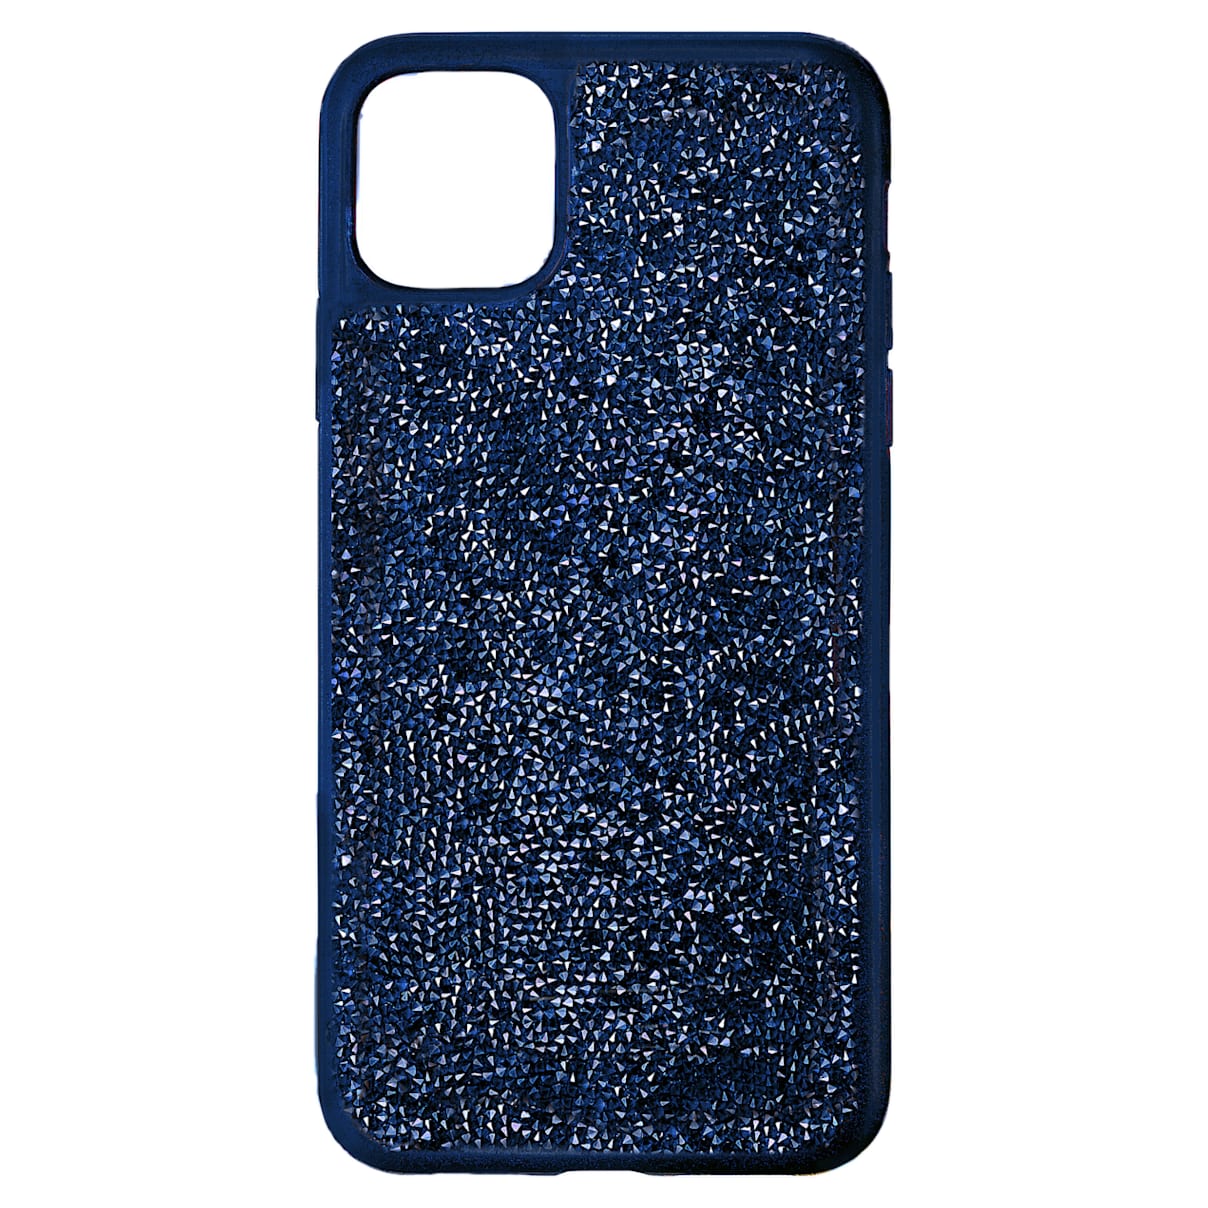 Custodia per smartphone con bordi protettivi Glam Rock, iPhone® 12 Pro Max, blu